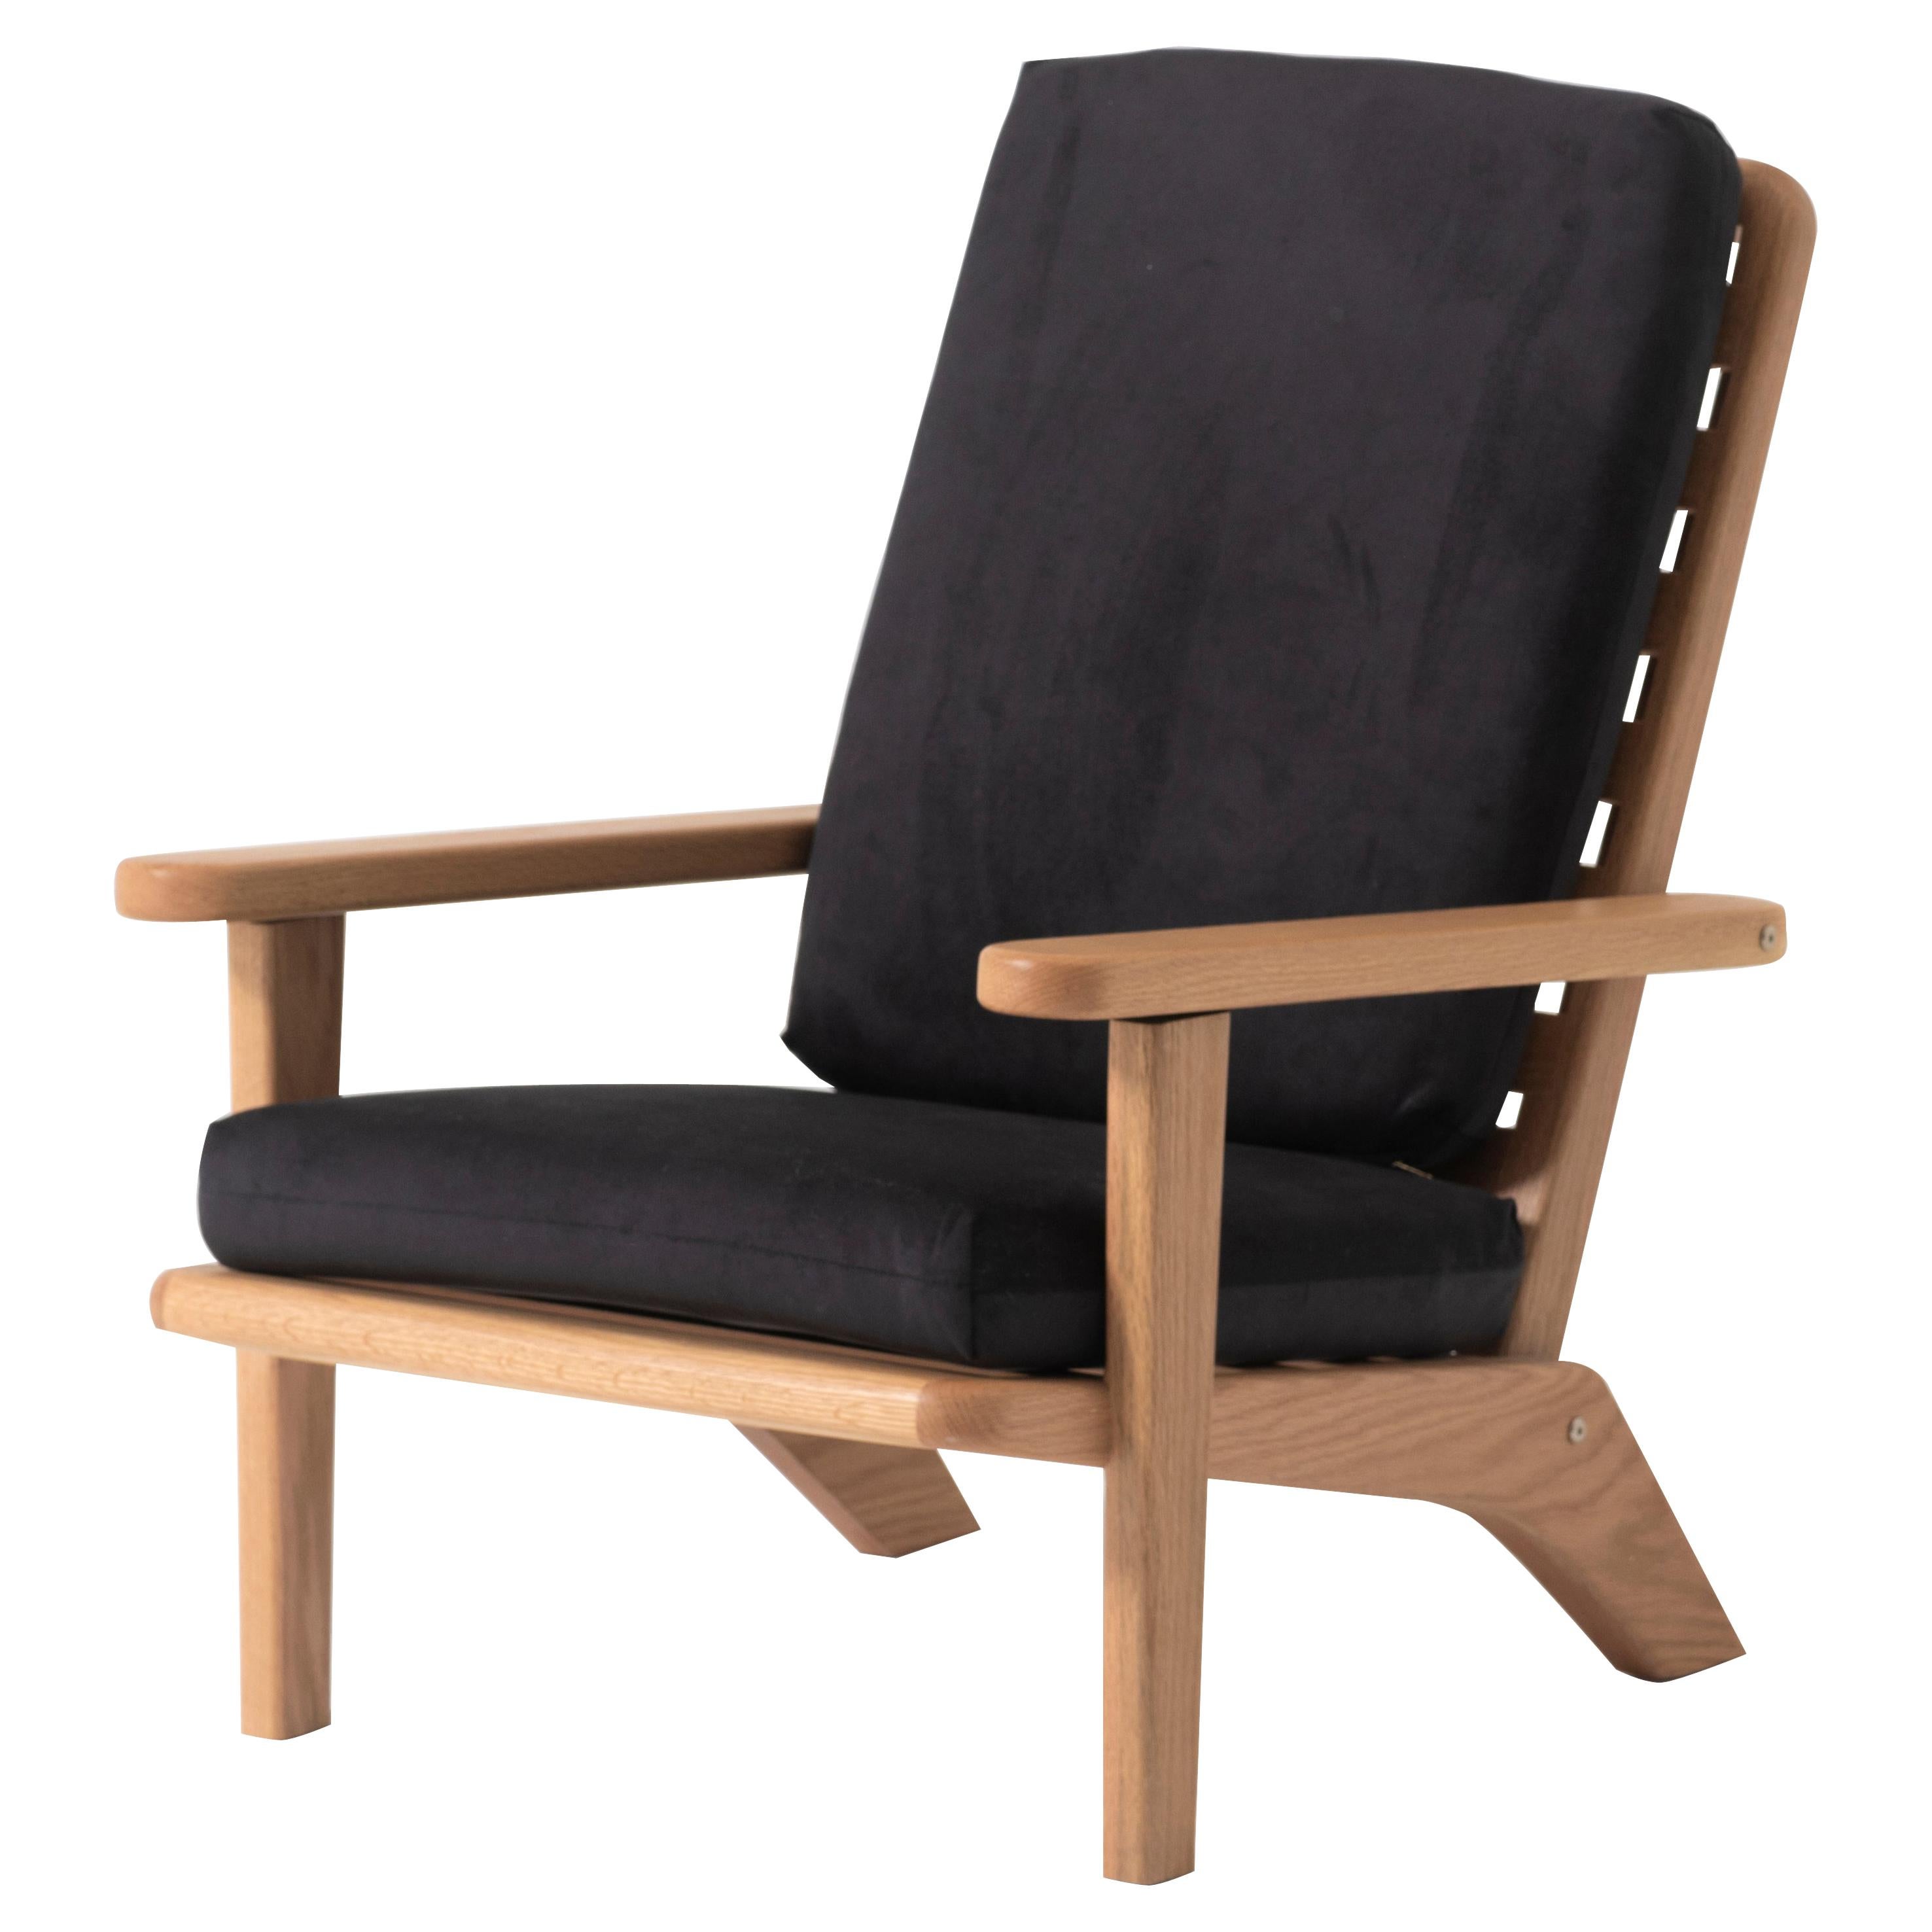 Chaise longue en Oak Wood massif avec coussin en textile noir et dossier inclinable